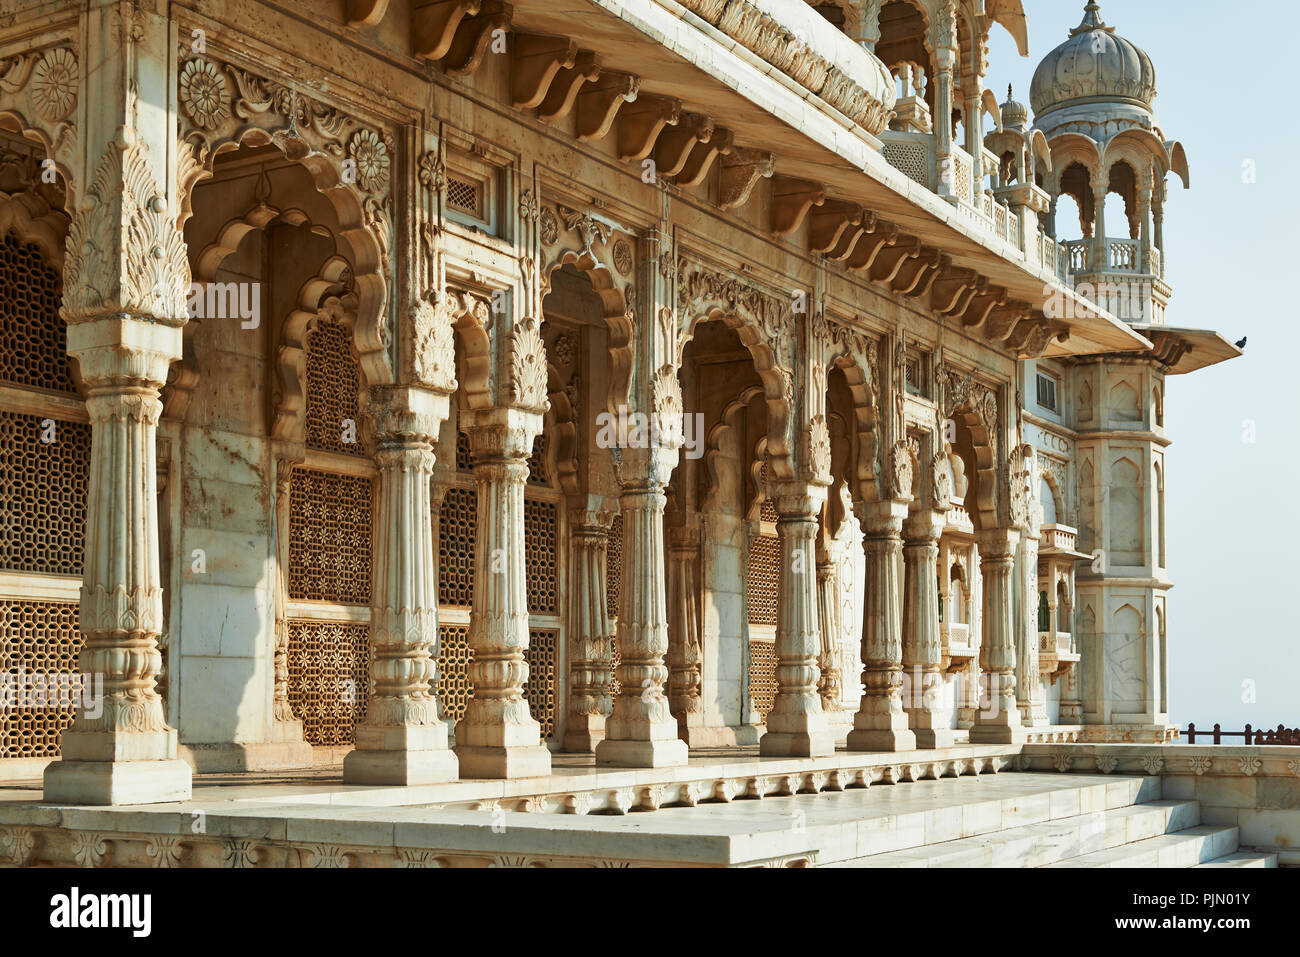 Die Jaswant Thada Mausoleum, Jodhpur, Rajasthan, Indien Stockfoto